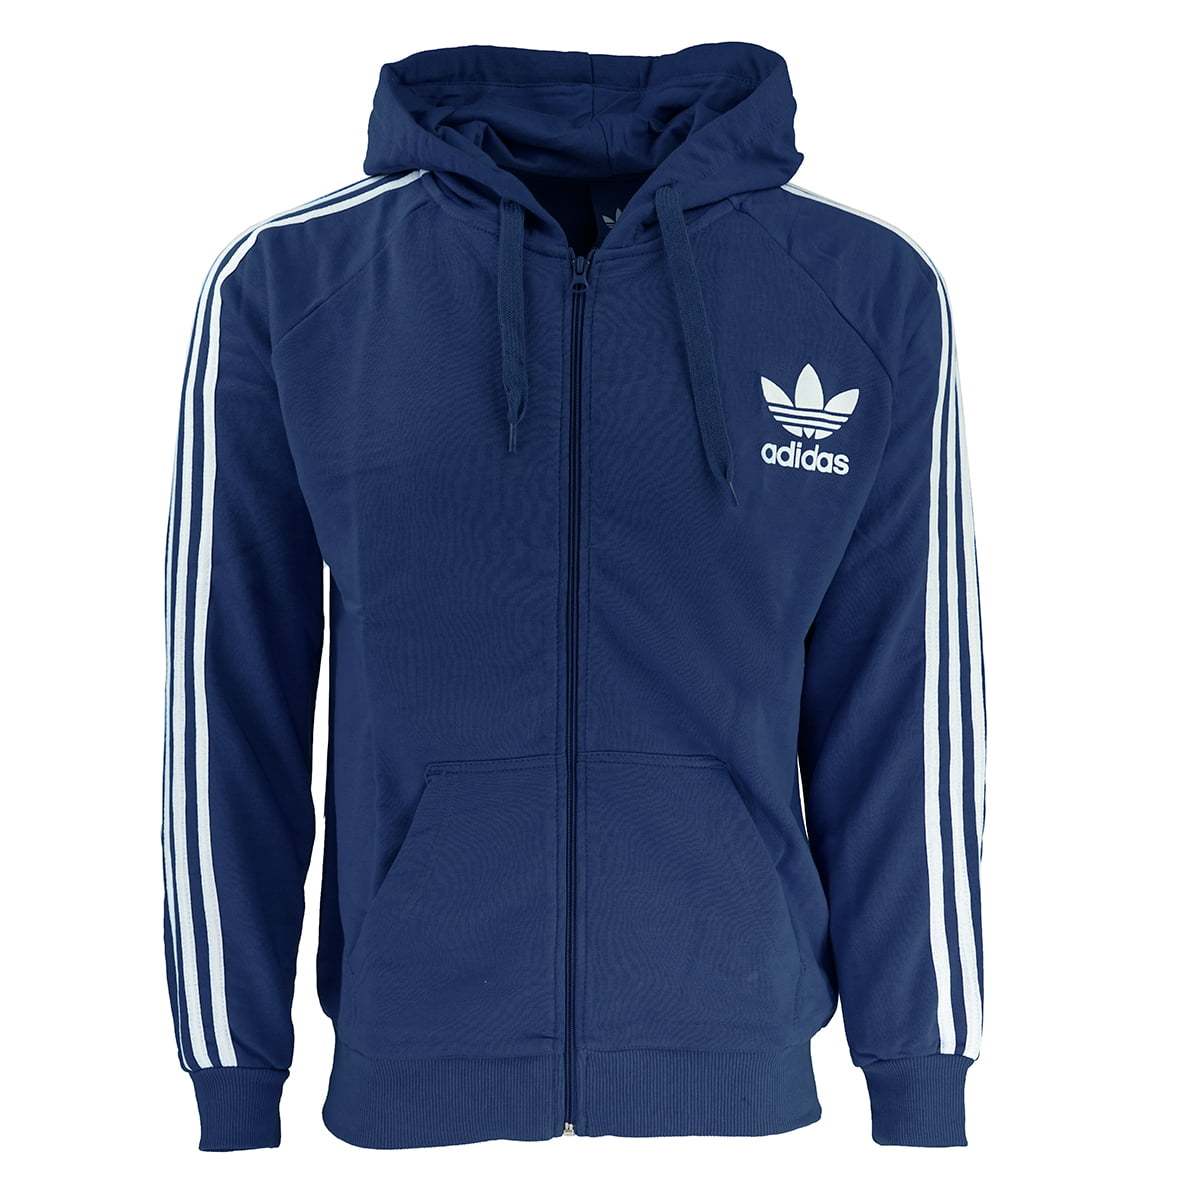 navy blue adidas zip up hoodie